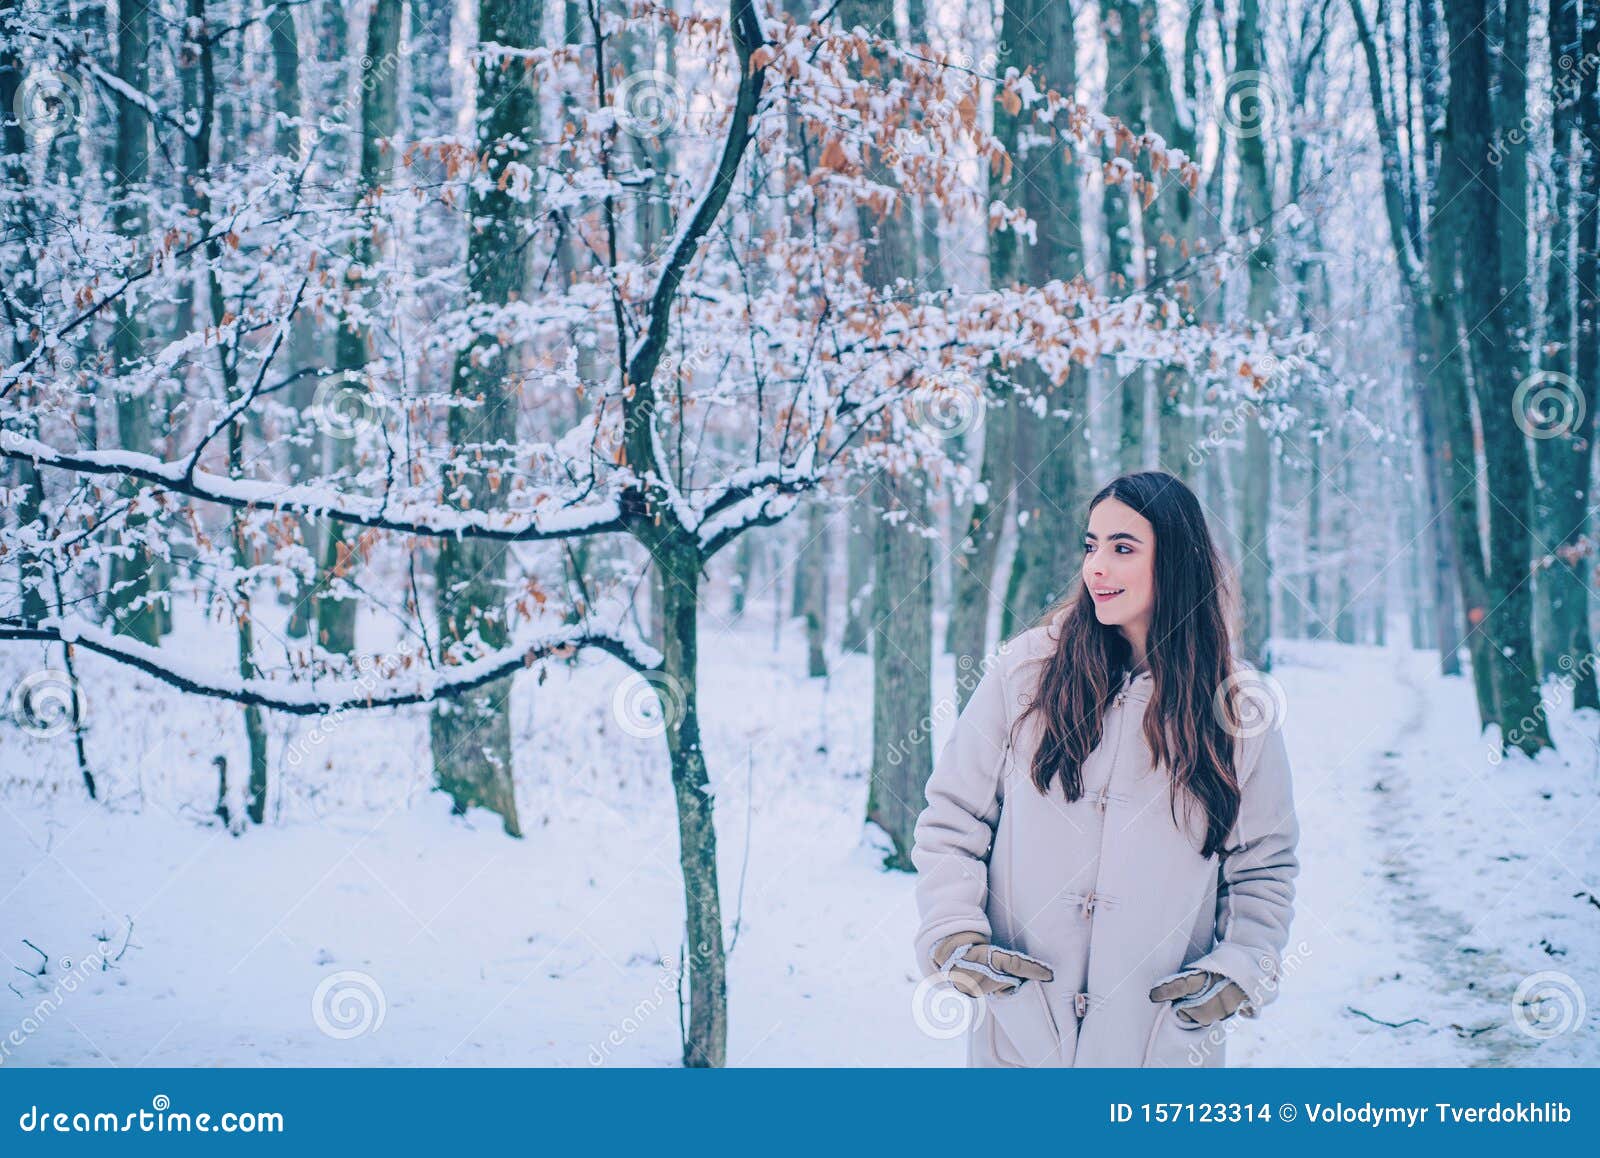 幸福的冬天女孩 年轻女性的肖像试图自己的雪的温暖 漂亮的冬季森林中 库存照片 图片包括有